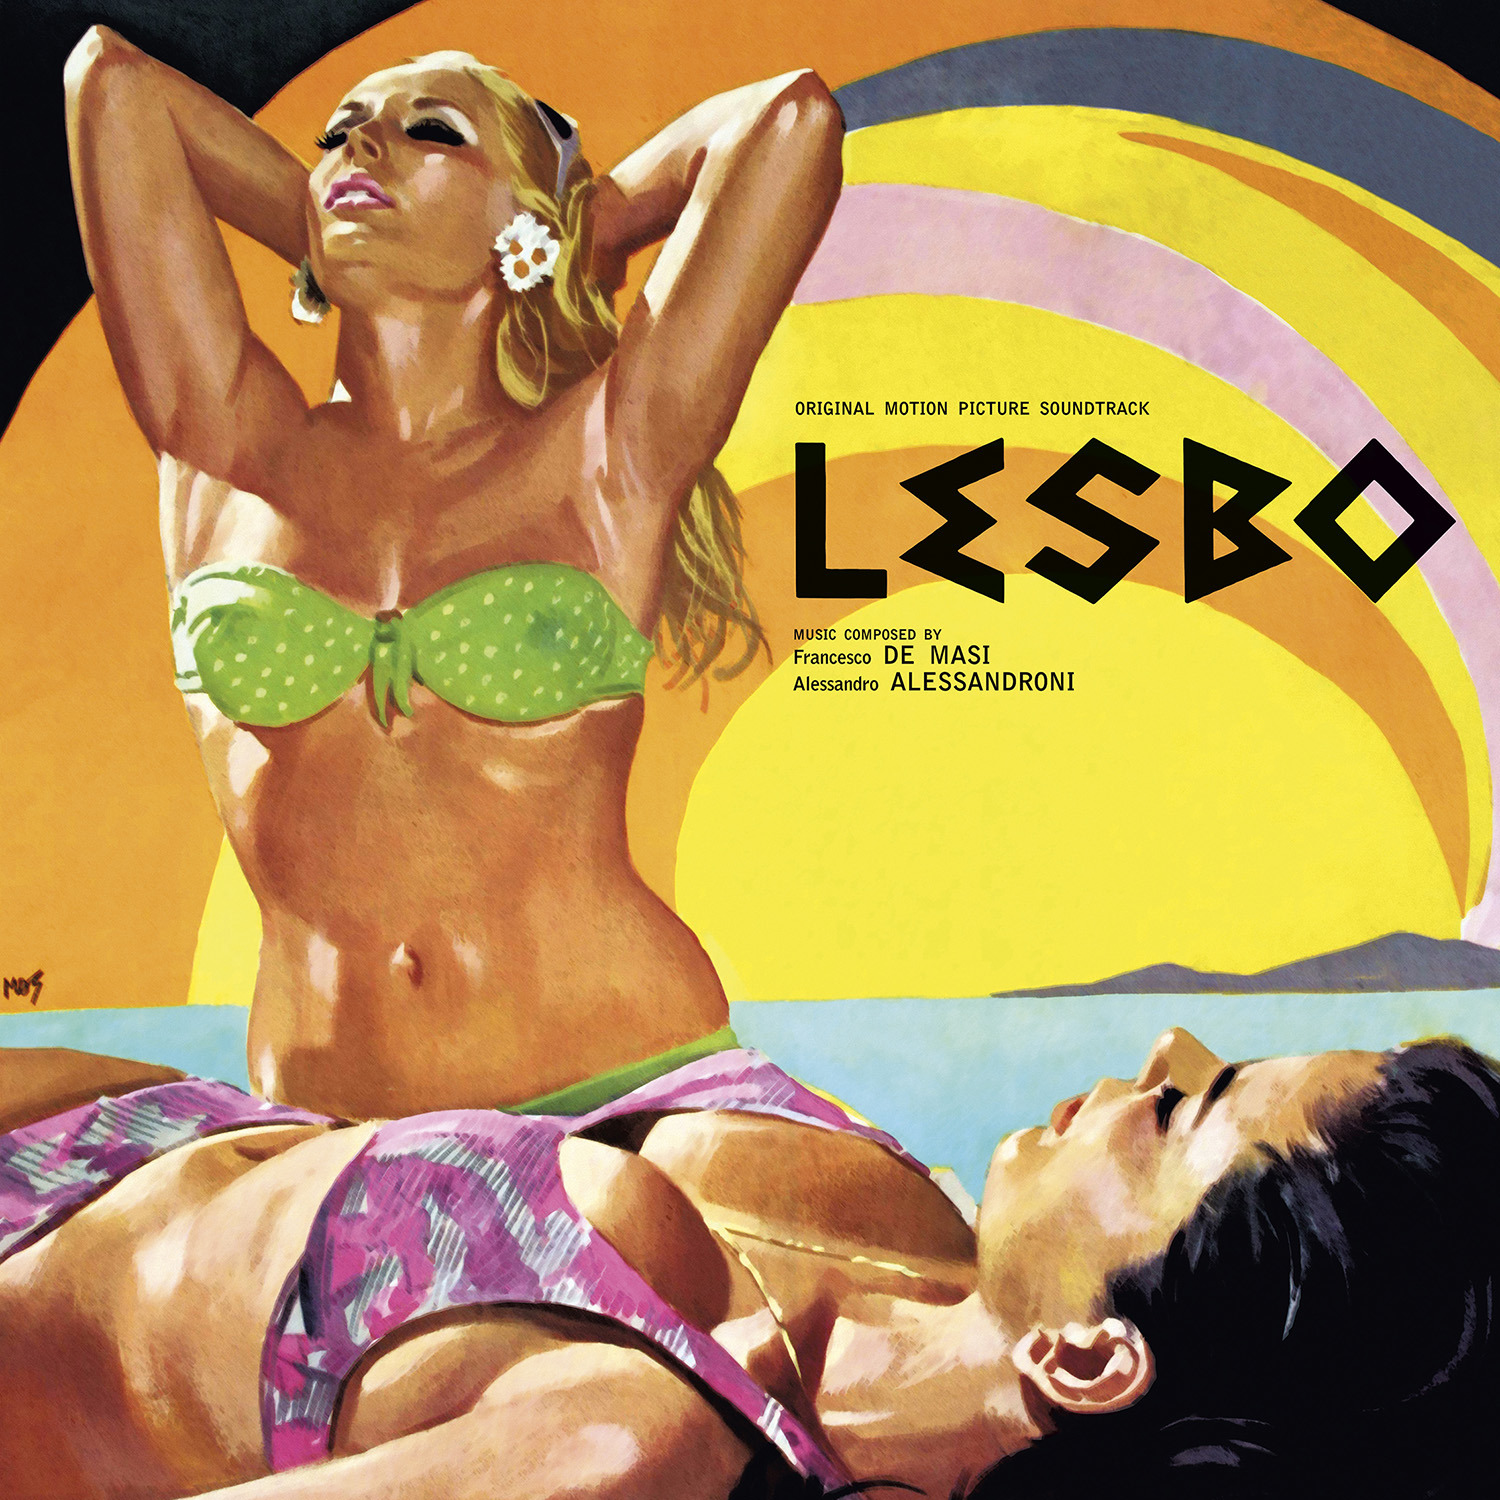 Vinile Alessandro Alessandroni - Lesbo (Ltd.Ed.Black Vinyl) / O.S.T. NUOVO SIGILLATO, EDIZIONE DEL 05/03/2021 SUBITO DISPONIBILE